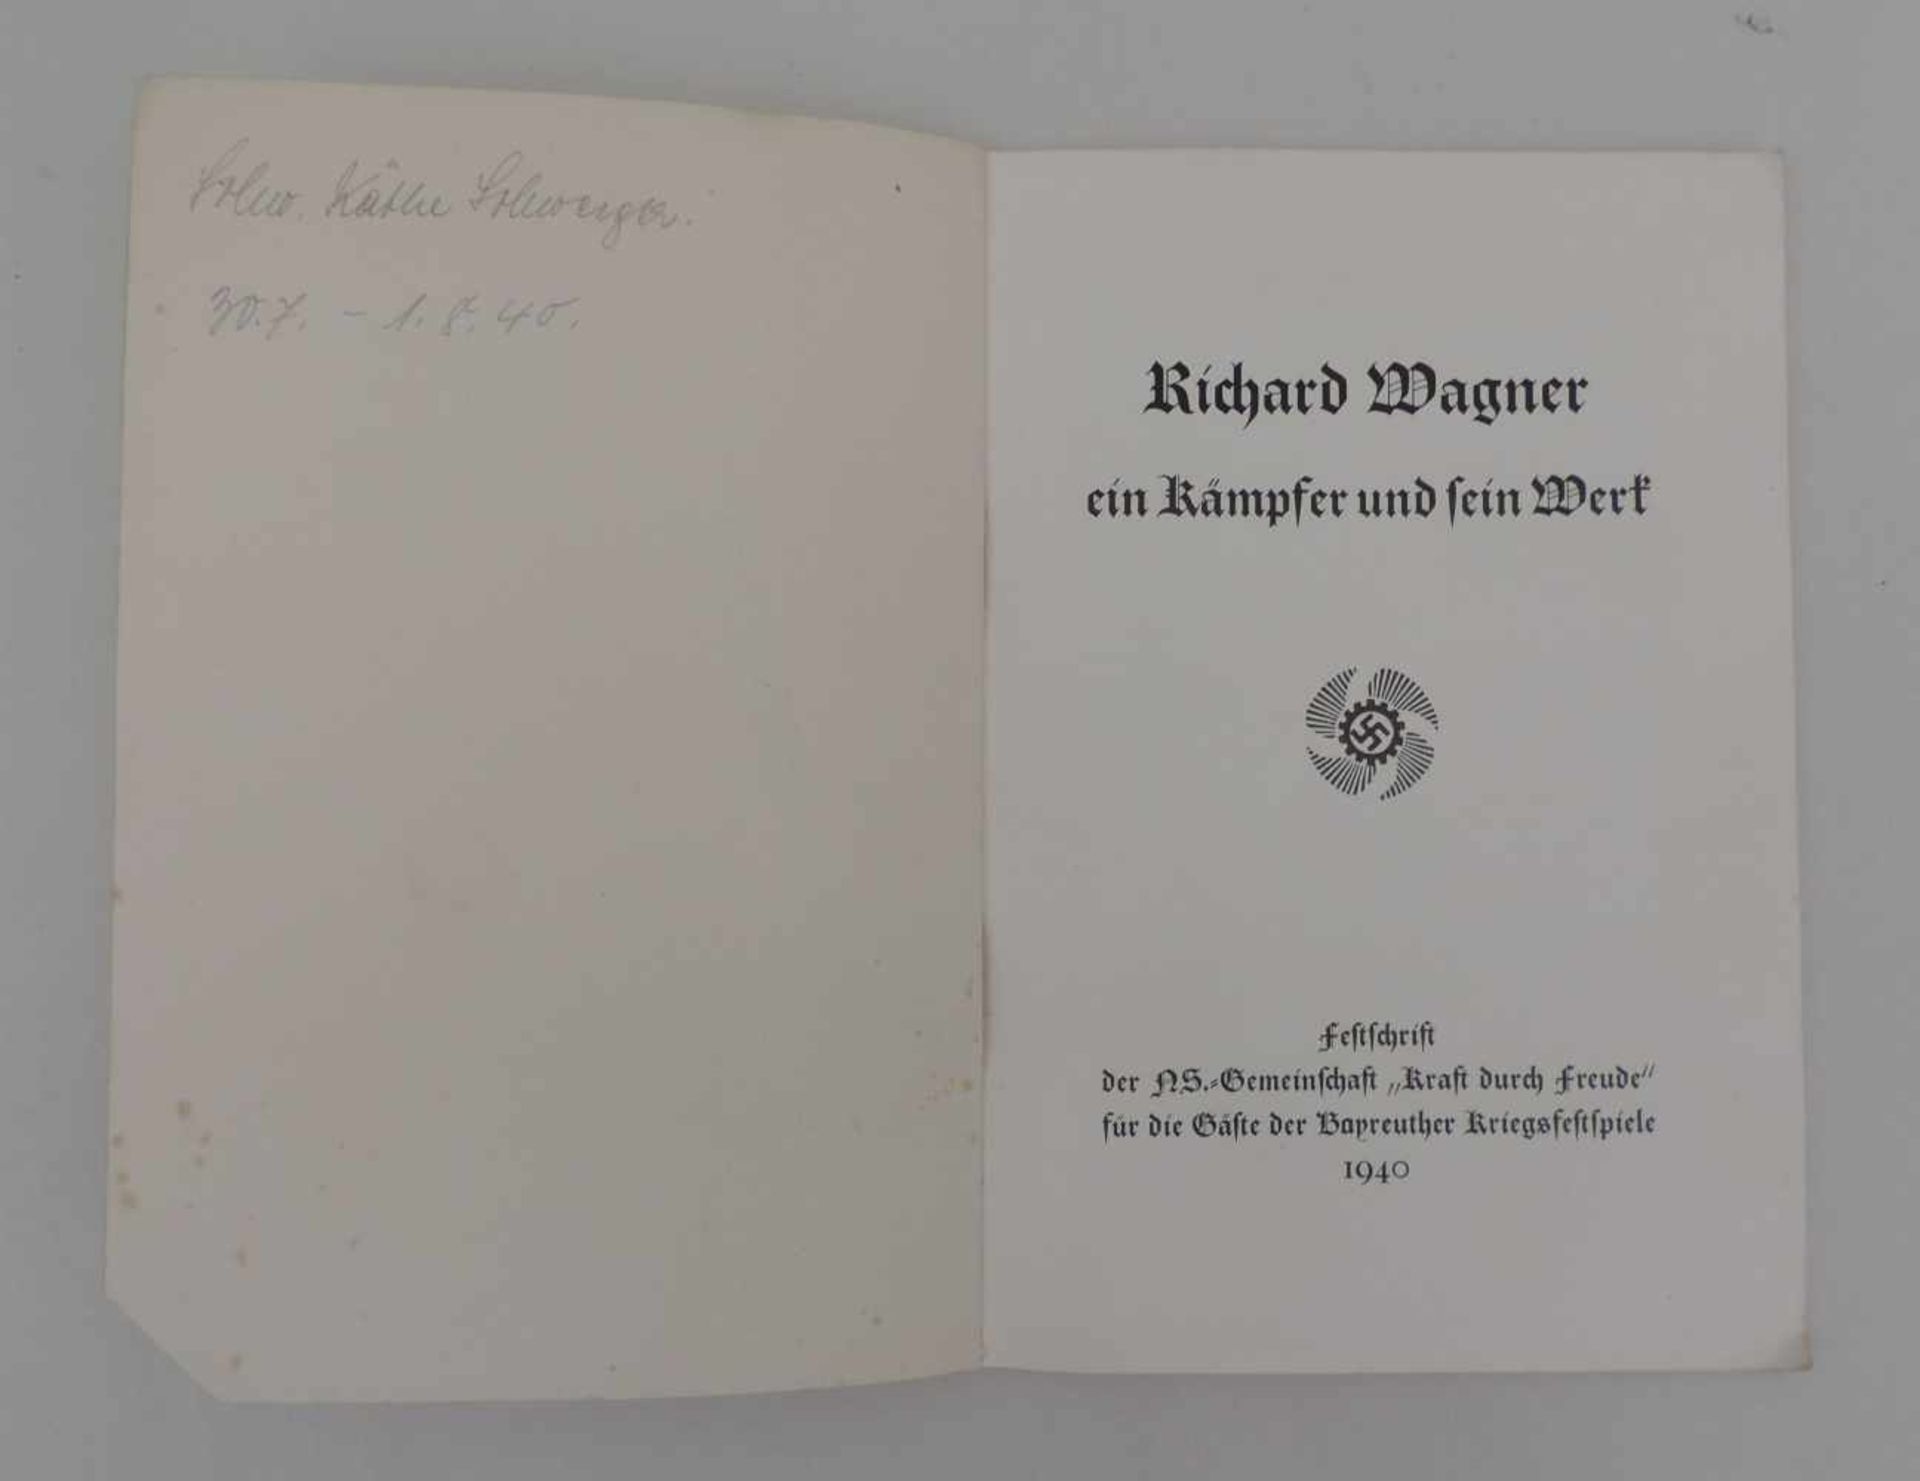 BAYREUTHER FESTSPIELE, 1940. -Richard Wagner, ein Kämpfer und sein Werk. Festschrift der NS.-